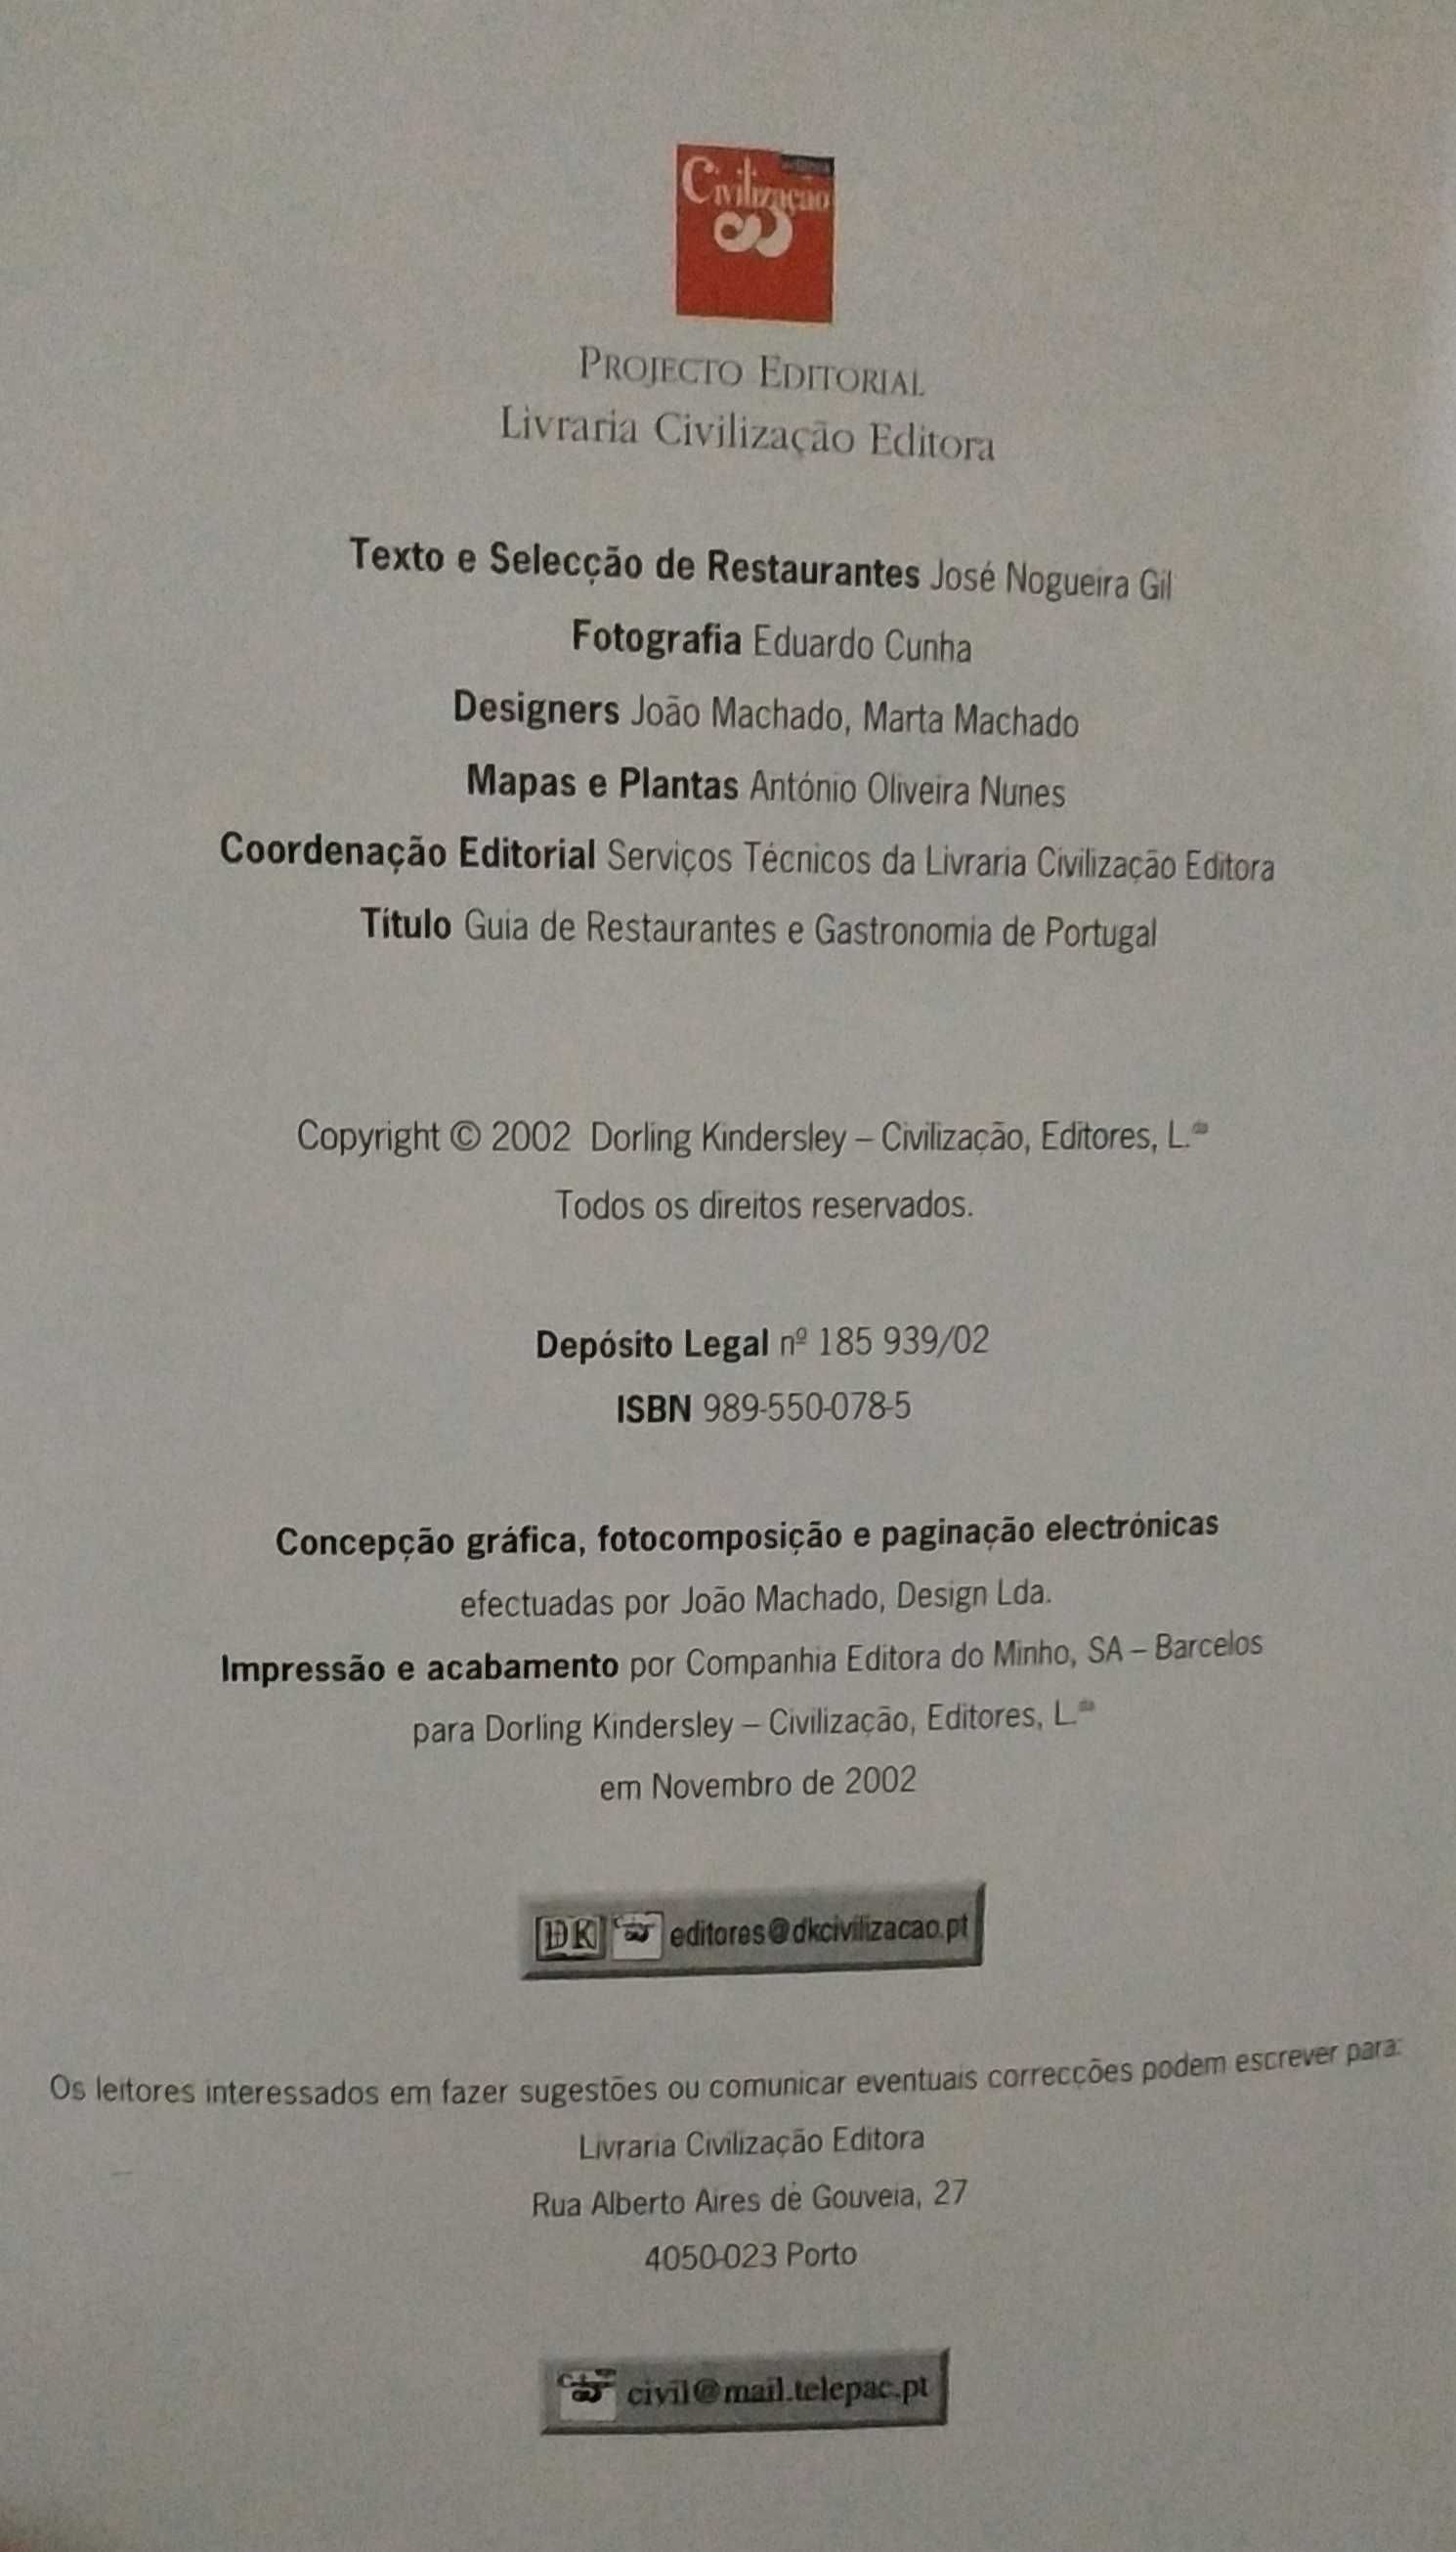 Portugal, Guia Restaurantes e Gastronomia American Express